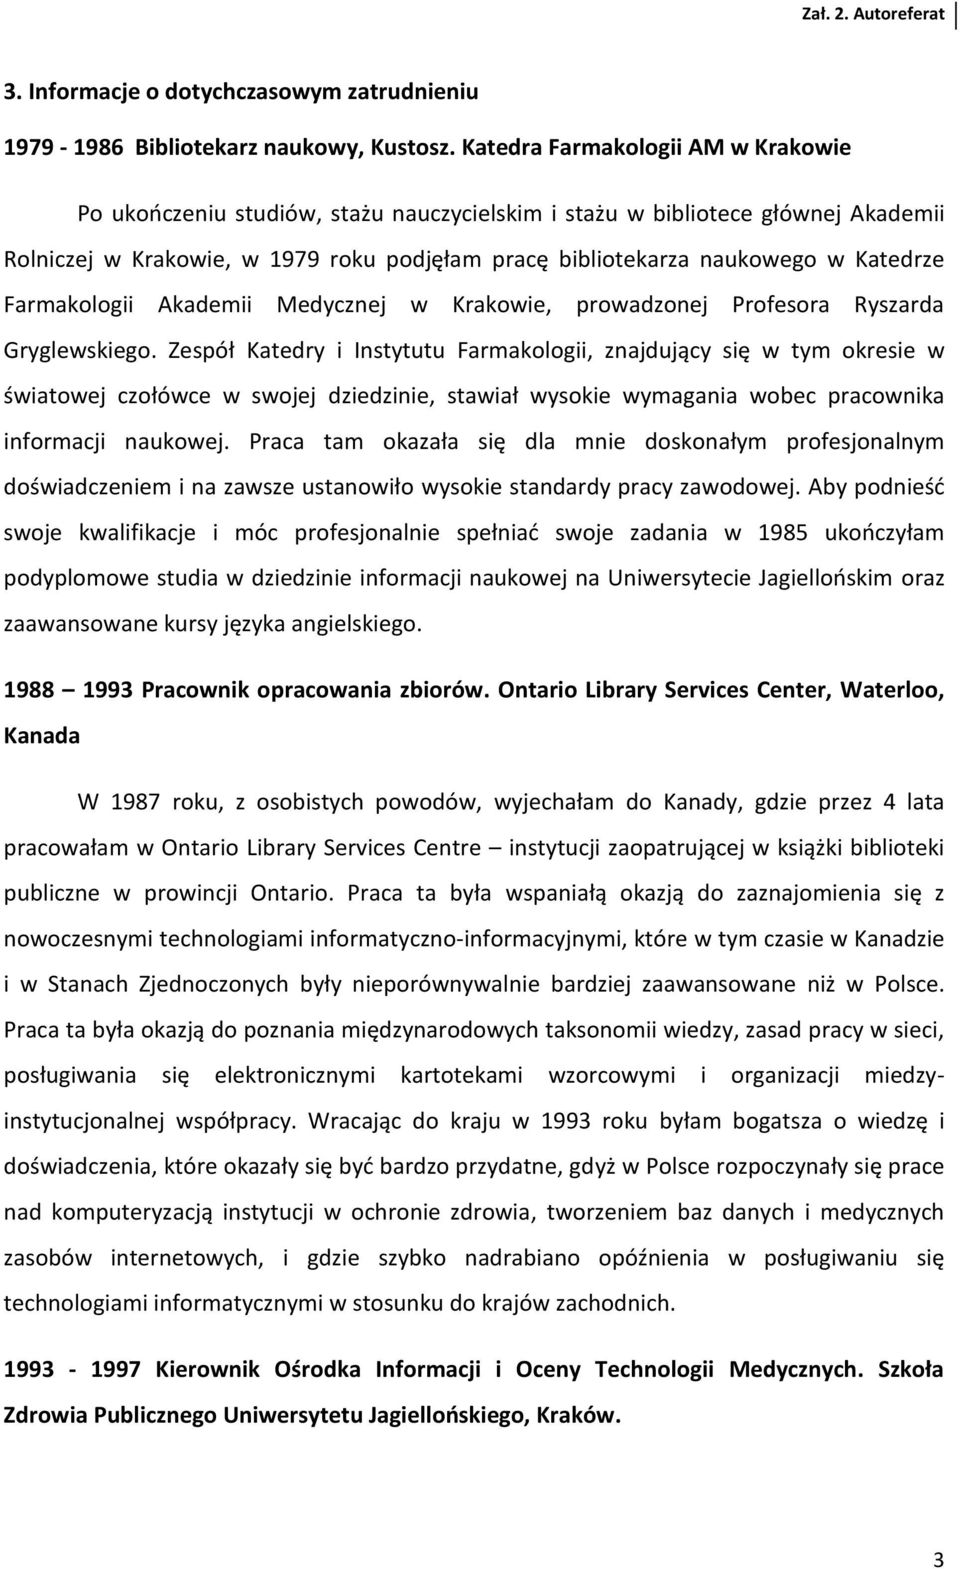 Katedrze Farmakologii Akademii Medycznej w Krakowie, prowadzonej Profesora Ryszarda Gryglewskiego.